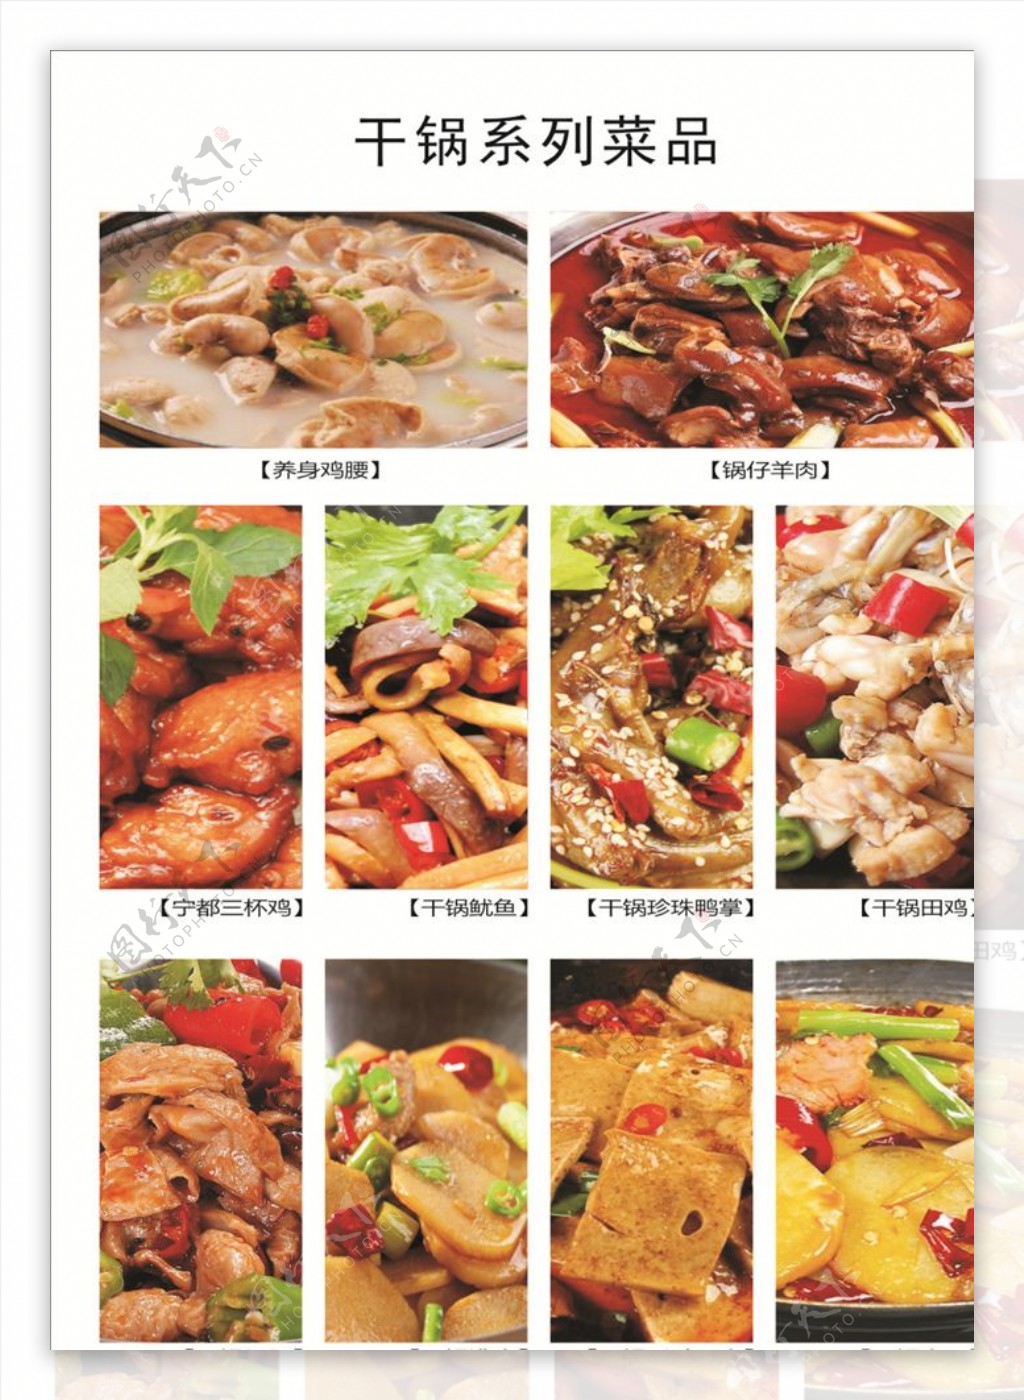 干锅系列菜品